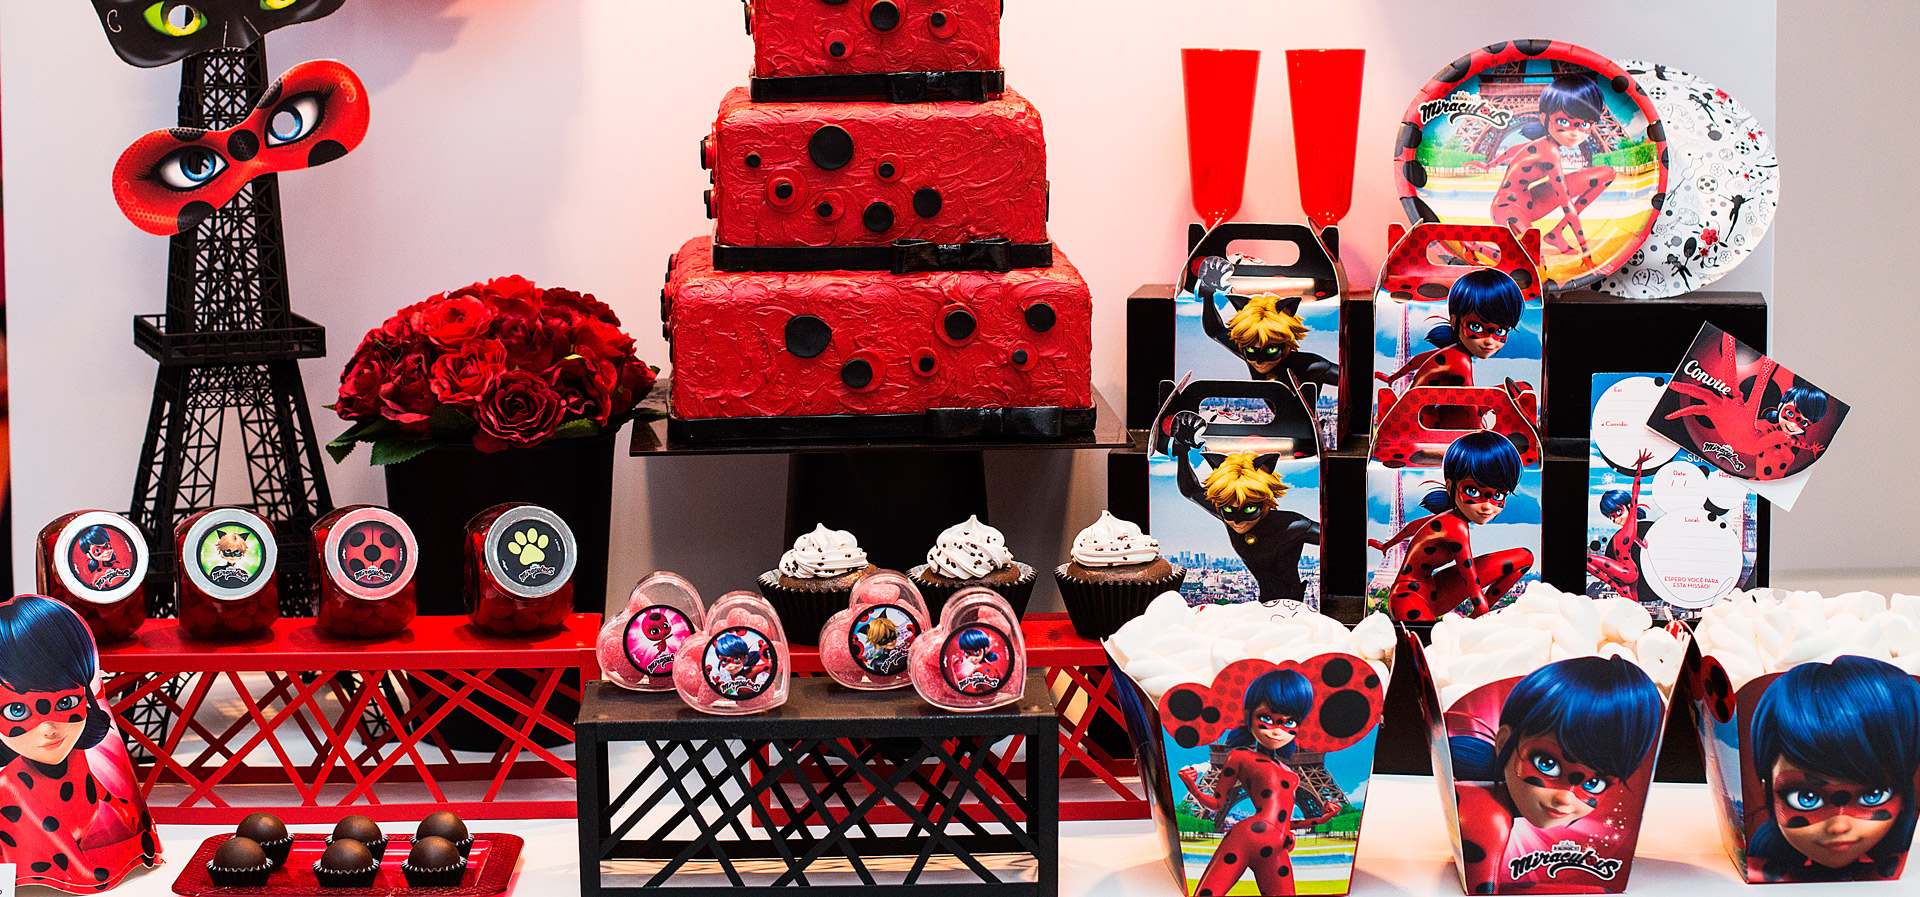 Festa Ladybug: Decoração de Aniversário